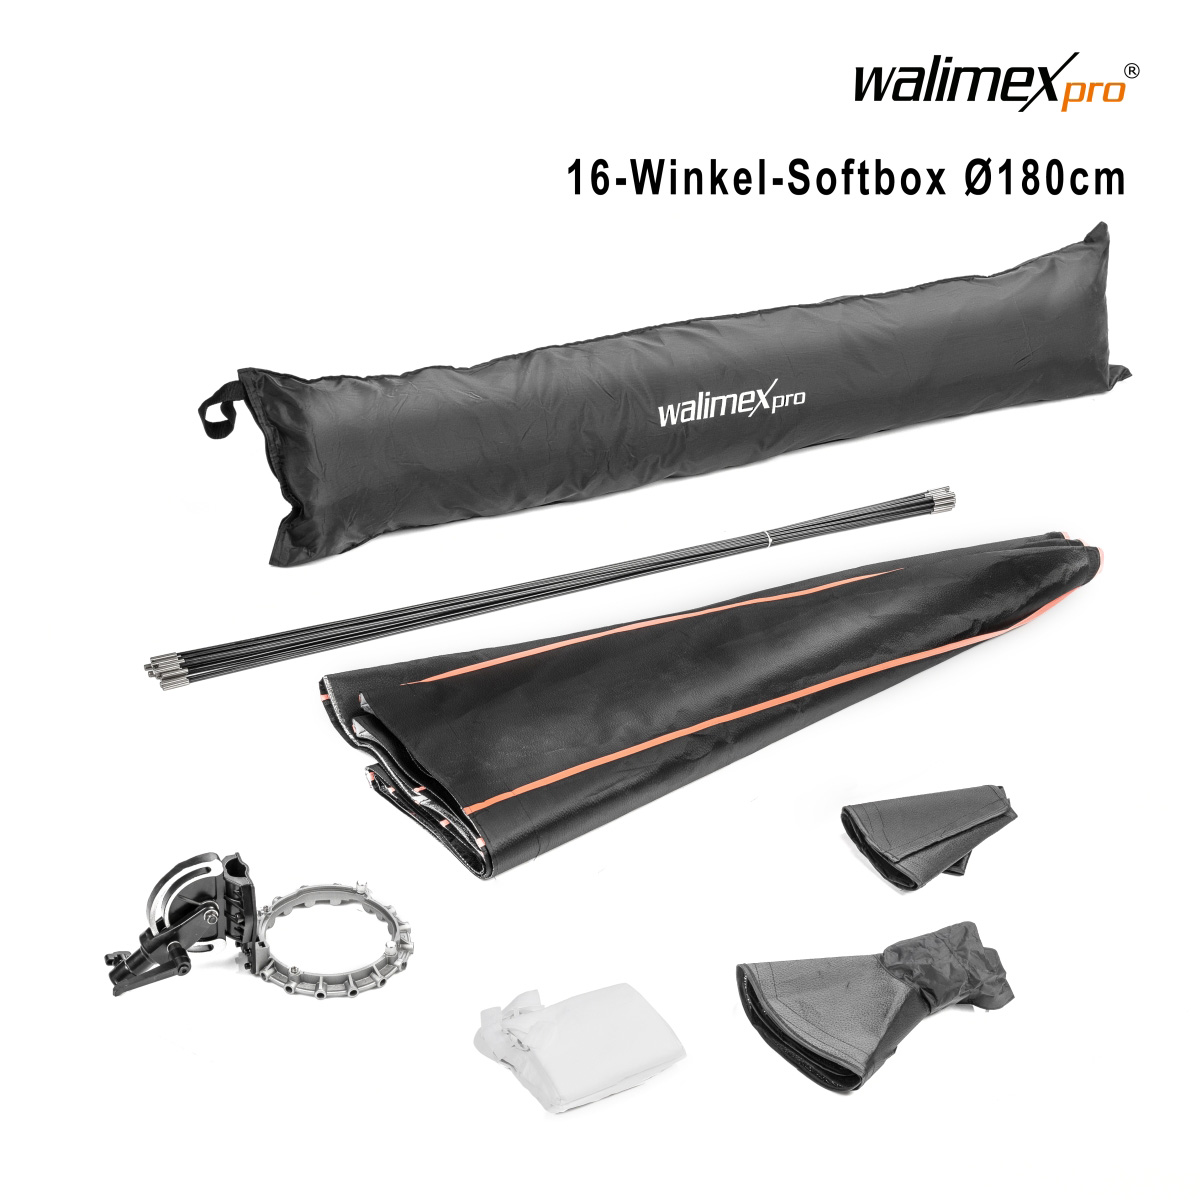 Walimex pro 16-Winkel-Softbox Ø 180 cm Multiblitz P